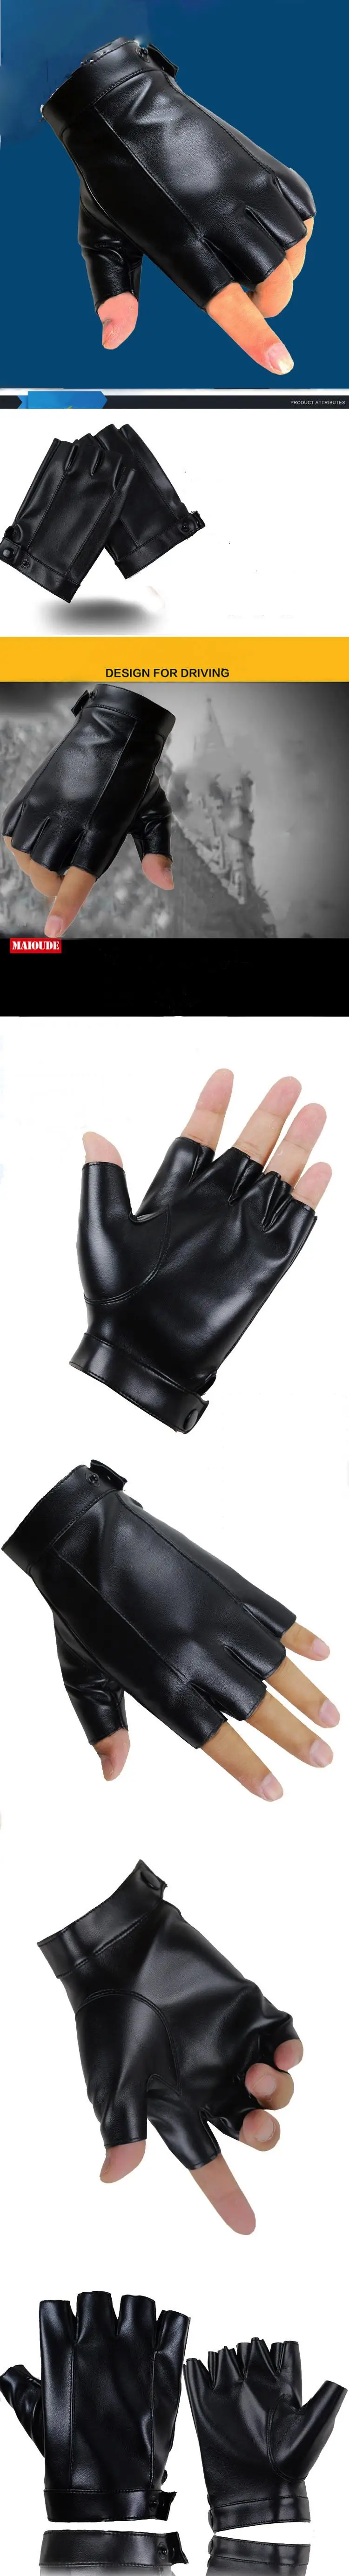 LongKeeper перчатки без пальцев Для мужчин женские вязаные рукавицы из искусственной кожи с открытыми пальцами на открытом воздухе езда на велосипеде для спорта, вождения уличная Танцы тренажерный зал